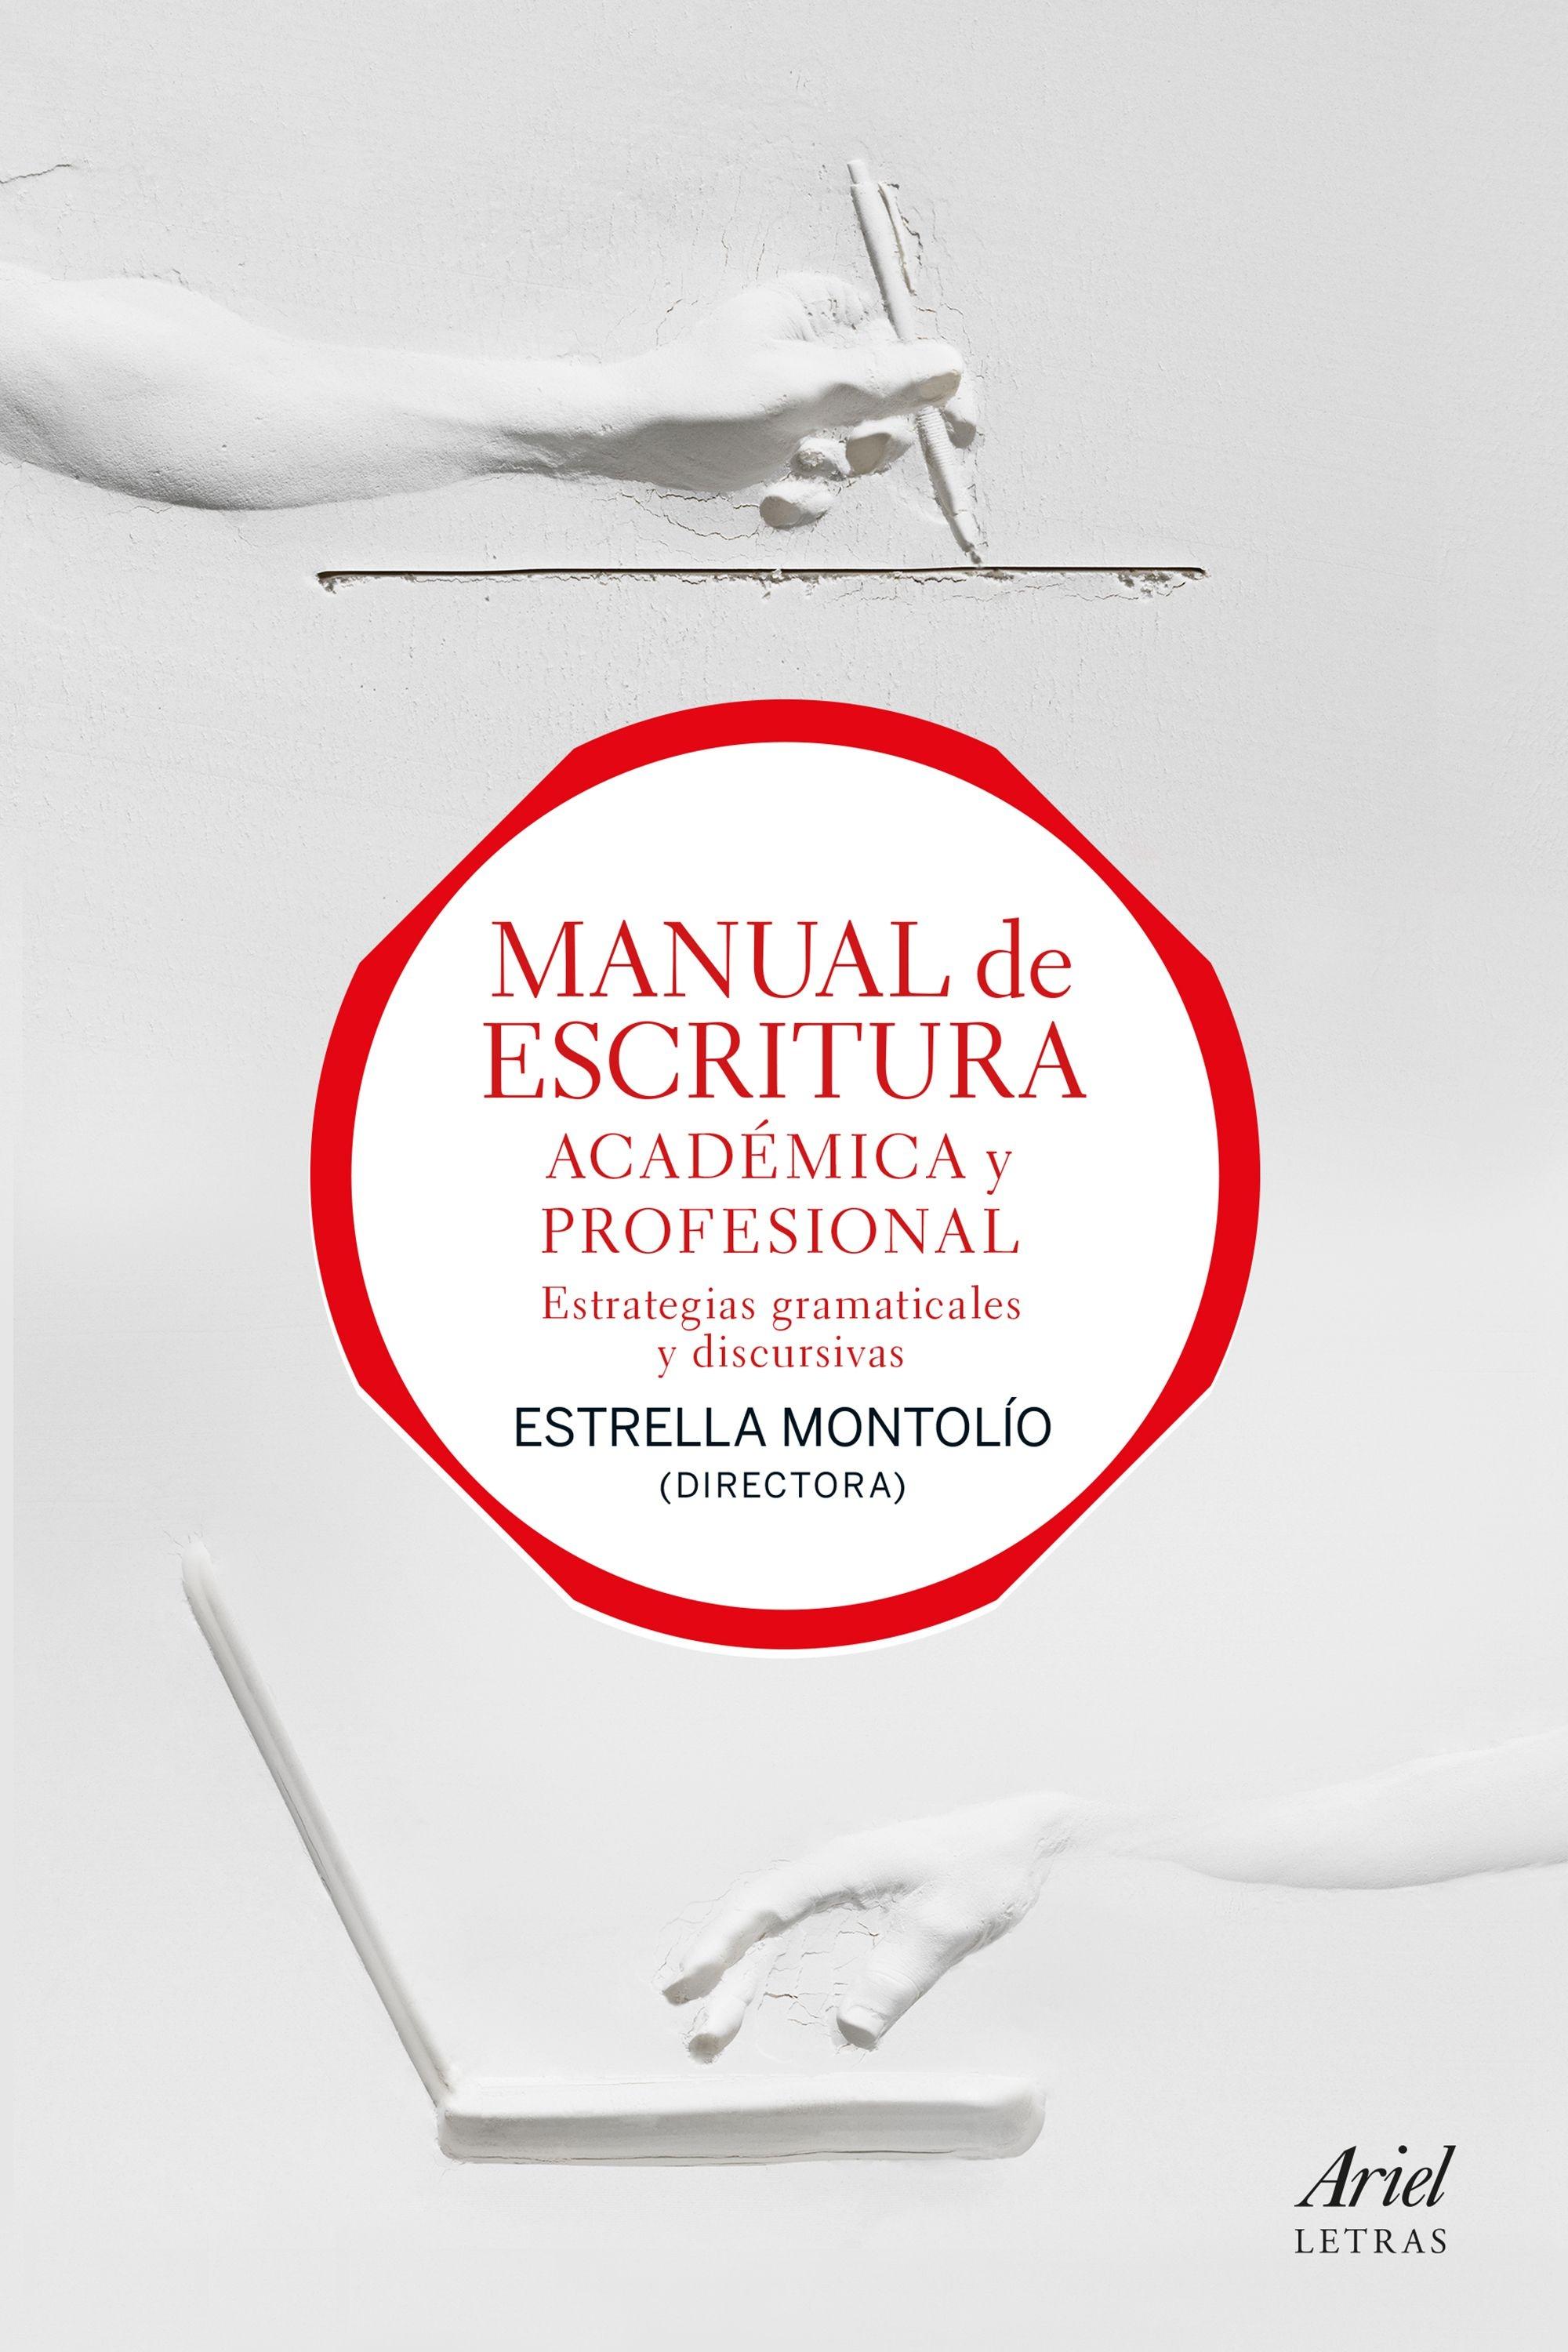 Manual de Escritura Académica y Profesional (Vol. I y Ii) "Estrategias Gramaticales y Discursivas". 